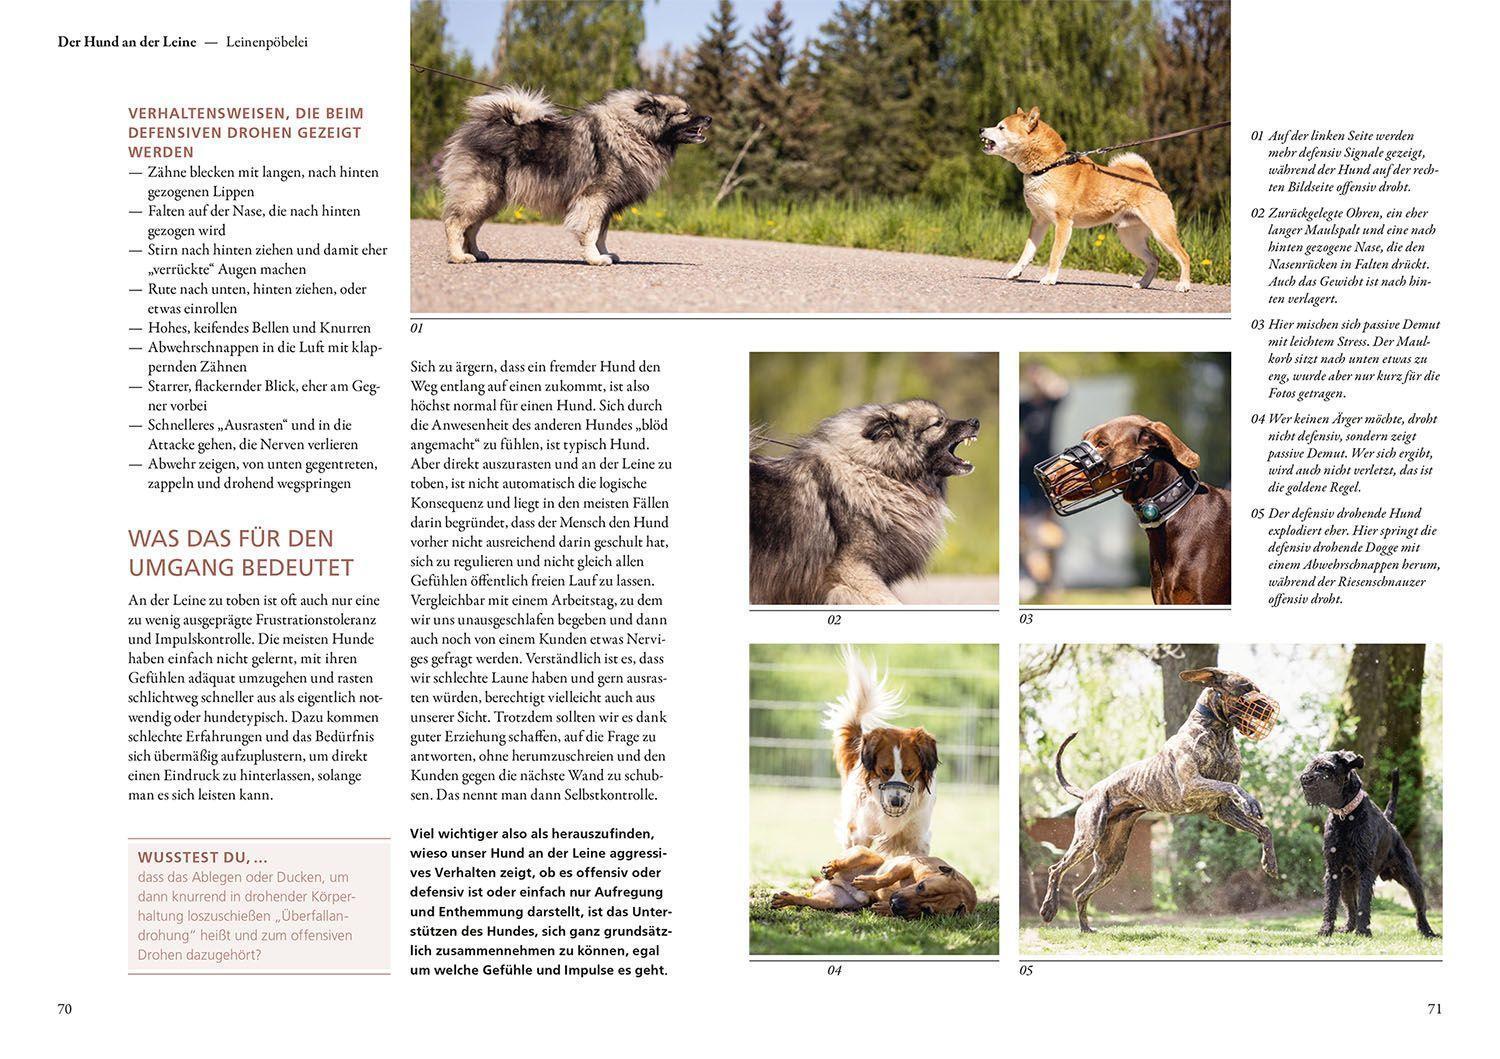 Bild: 9783440175583 | Hunde lesen lernen | Maren Grote | Taschenbuch | 200 S. | Deutsch